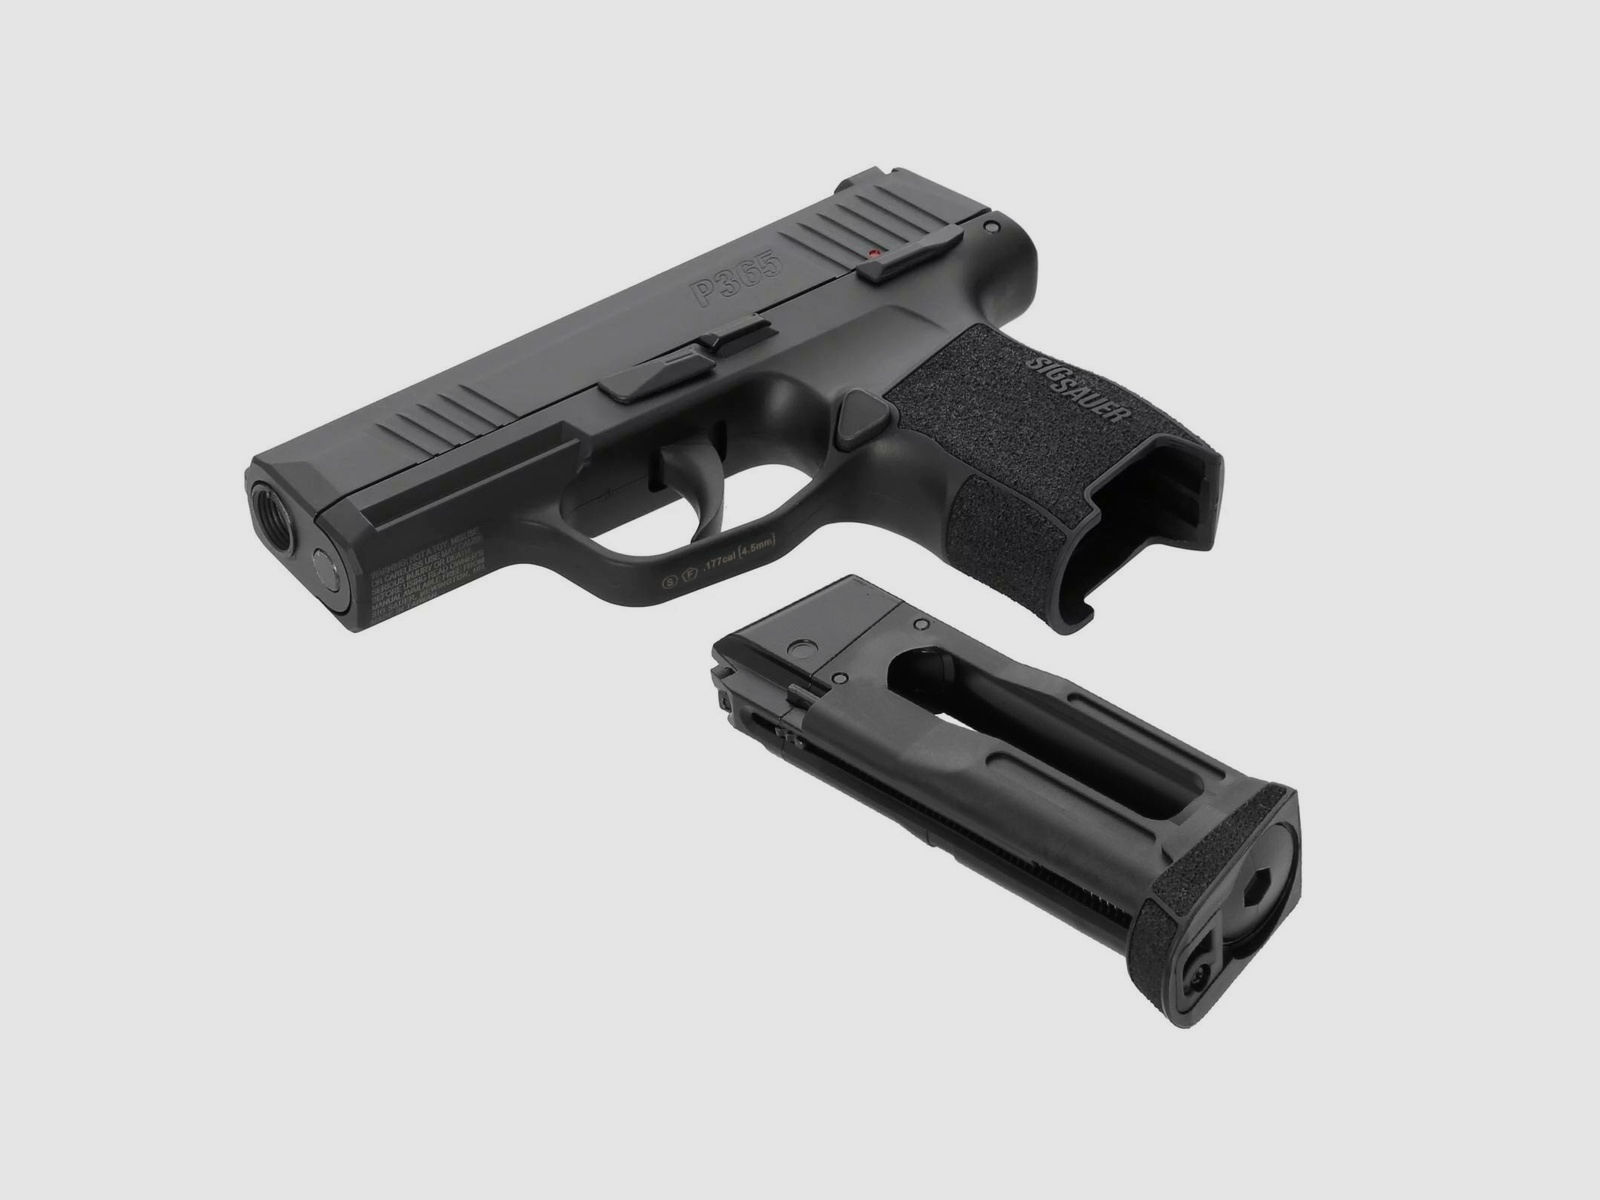 SET SIG SAUER P365 4,5 mm BB Blowback Co2-Pistole (P18)